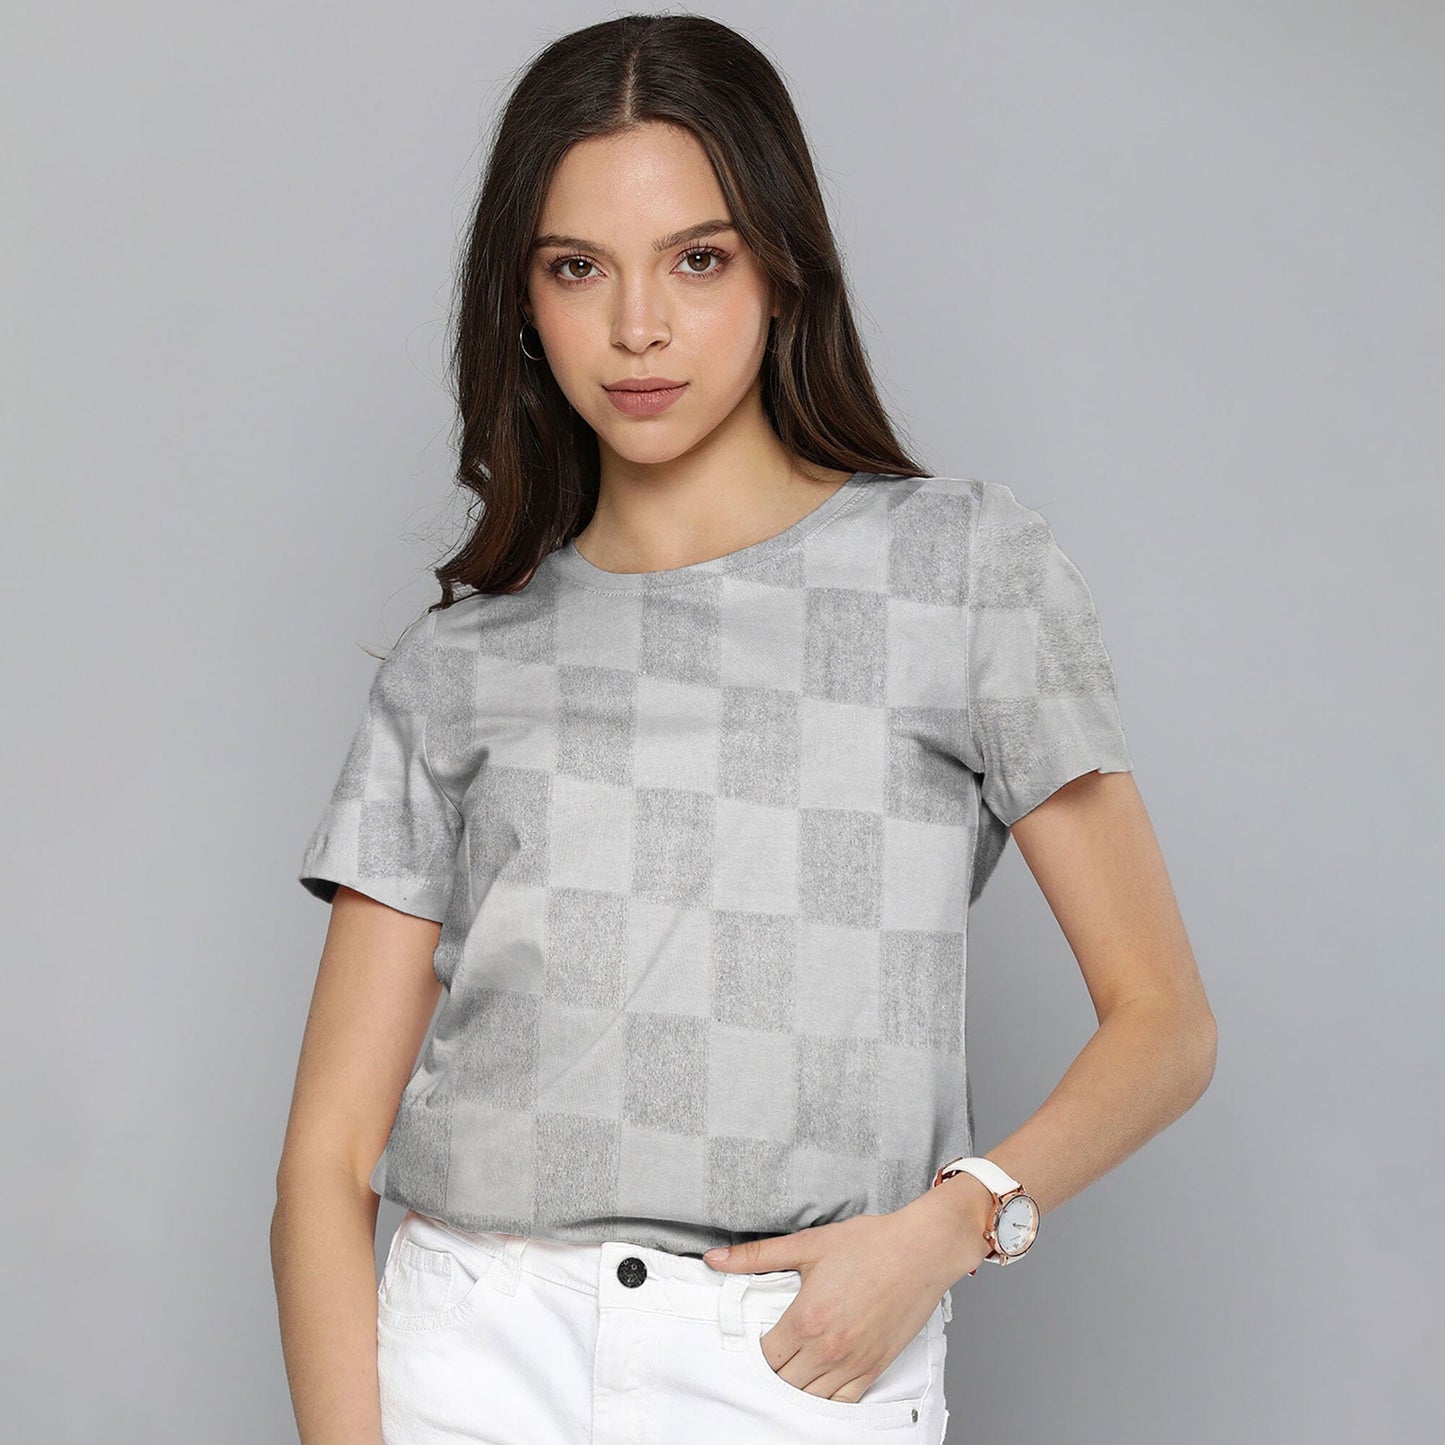 Max 21 Women's Bilbeis Design Short Sleeve Tee Shirt Women's Tee Shirt SZK Grey S 